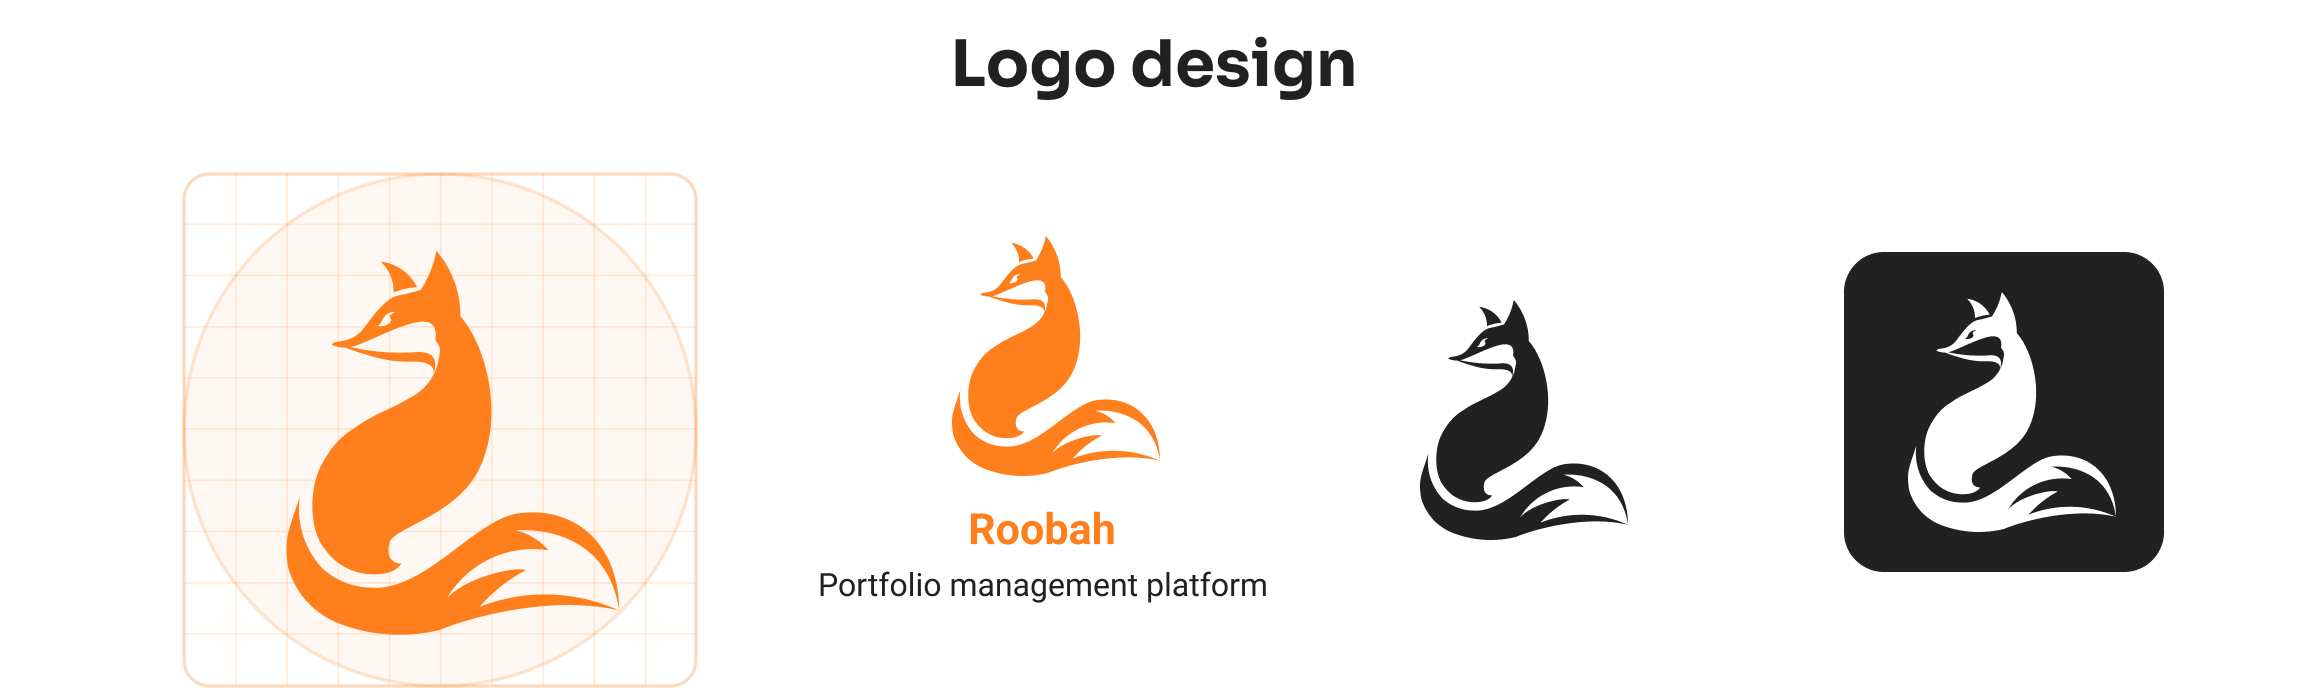 Robbah-Logo-design.png